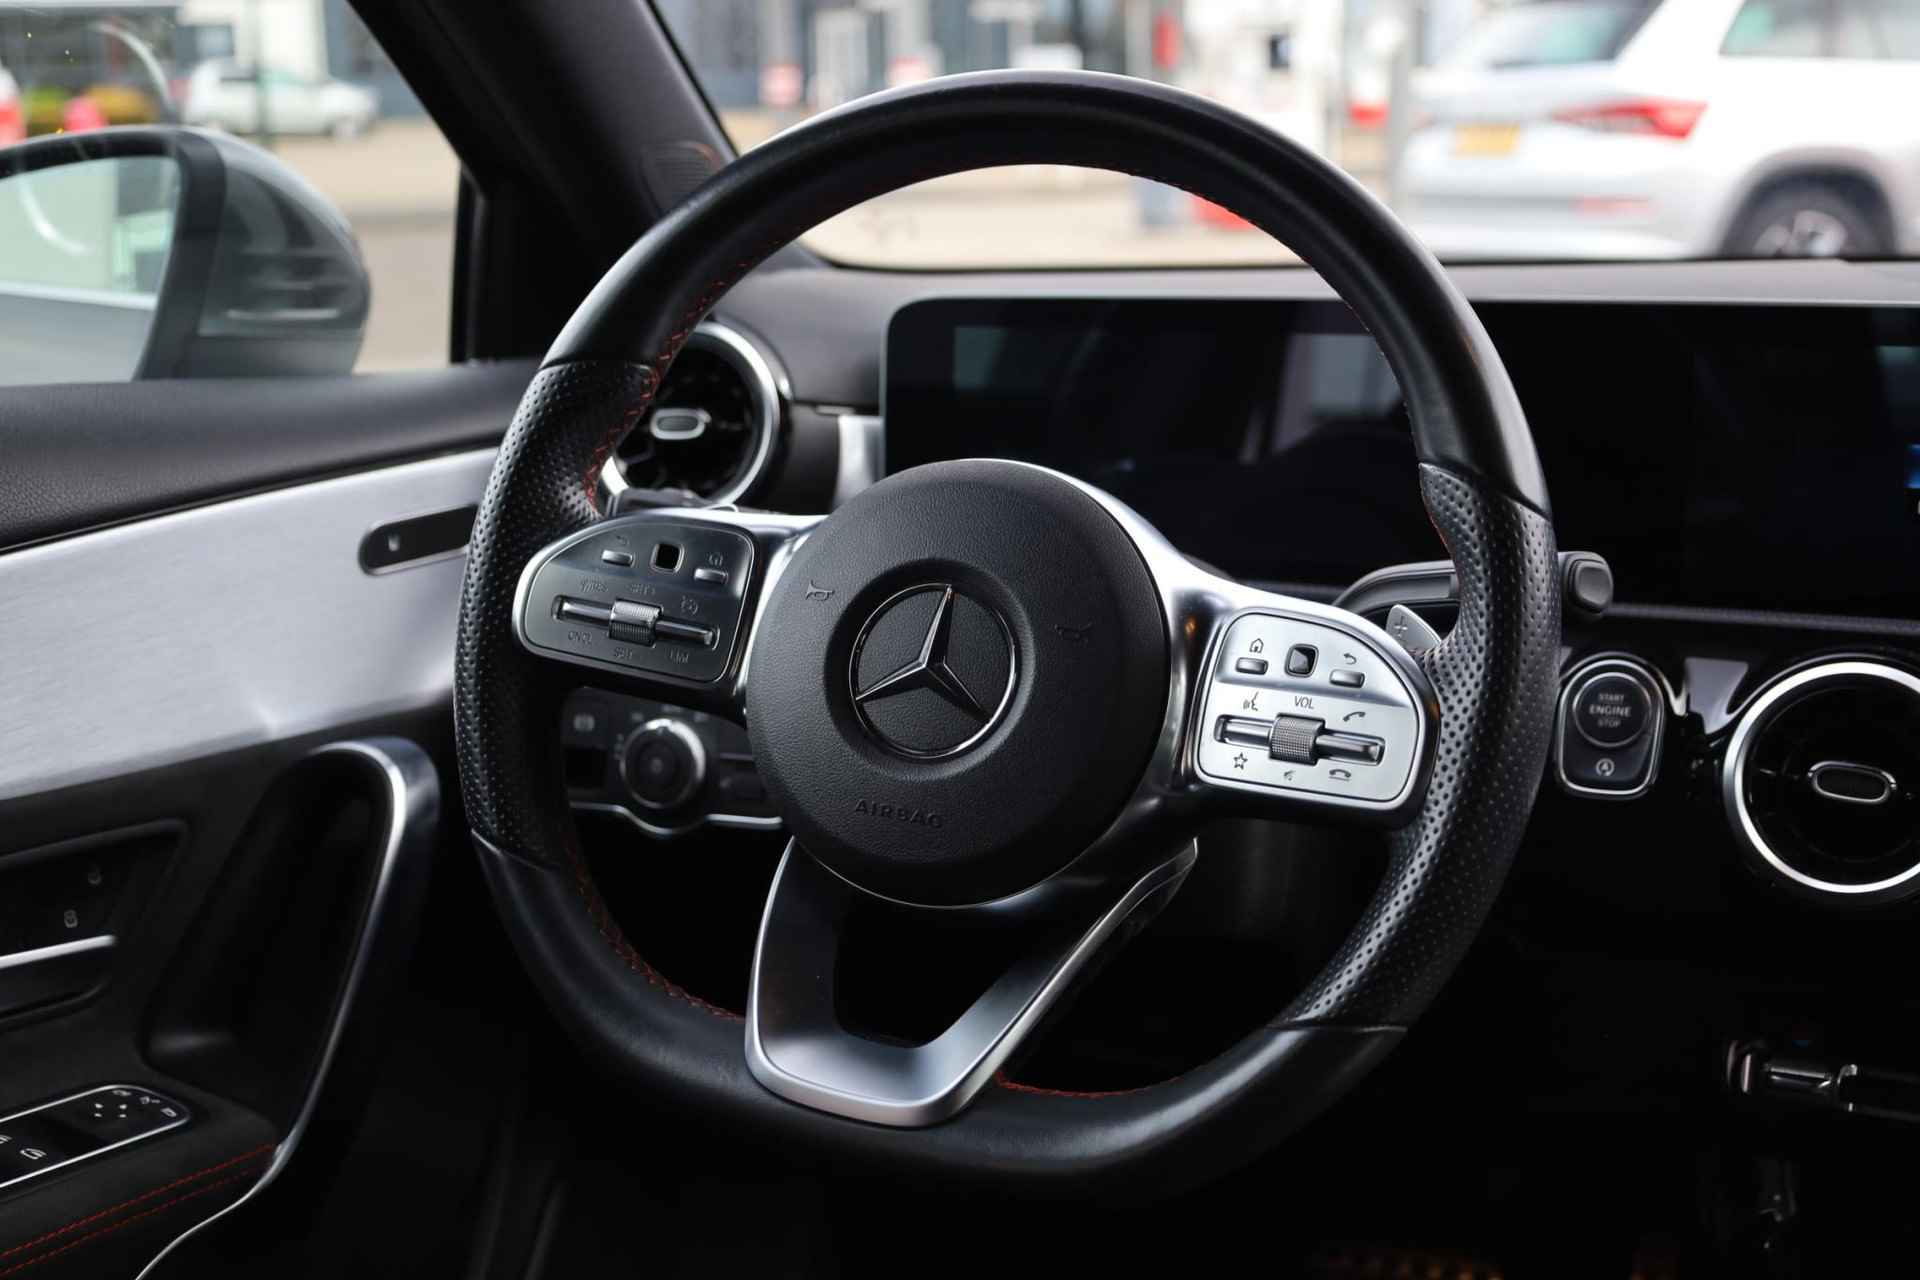 Mercedes-Benz A-klasse 200 Business Solution AMG 163PK / 120kW automaat, Leder / alcantara, winterset LMV, digitaal dashboard, navigatie, LED verlichting voor en achter, 18" LMV, stoelverwarming, parkeersensoren voor en achter, AMG bumpers - 21/44